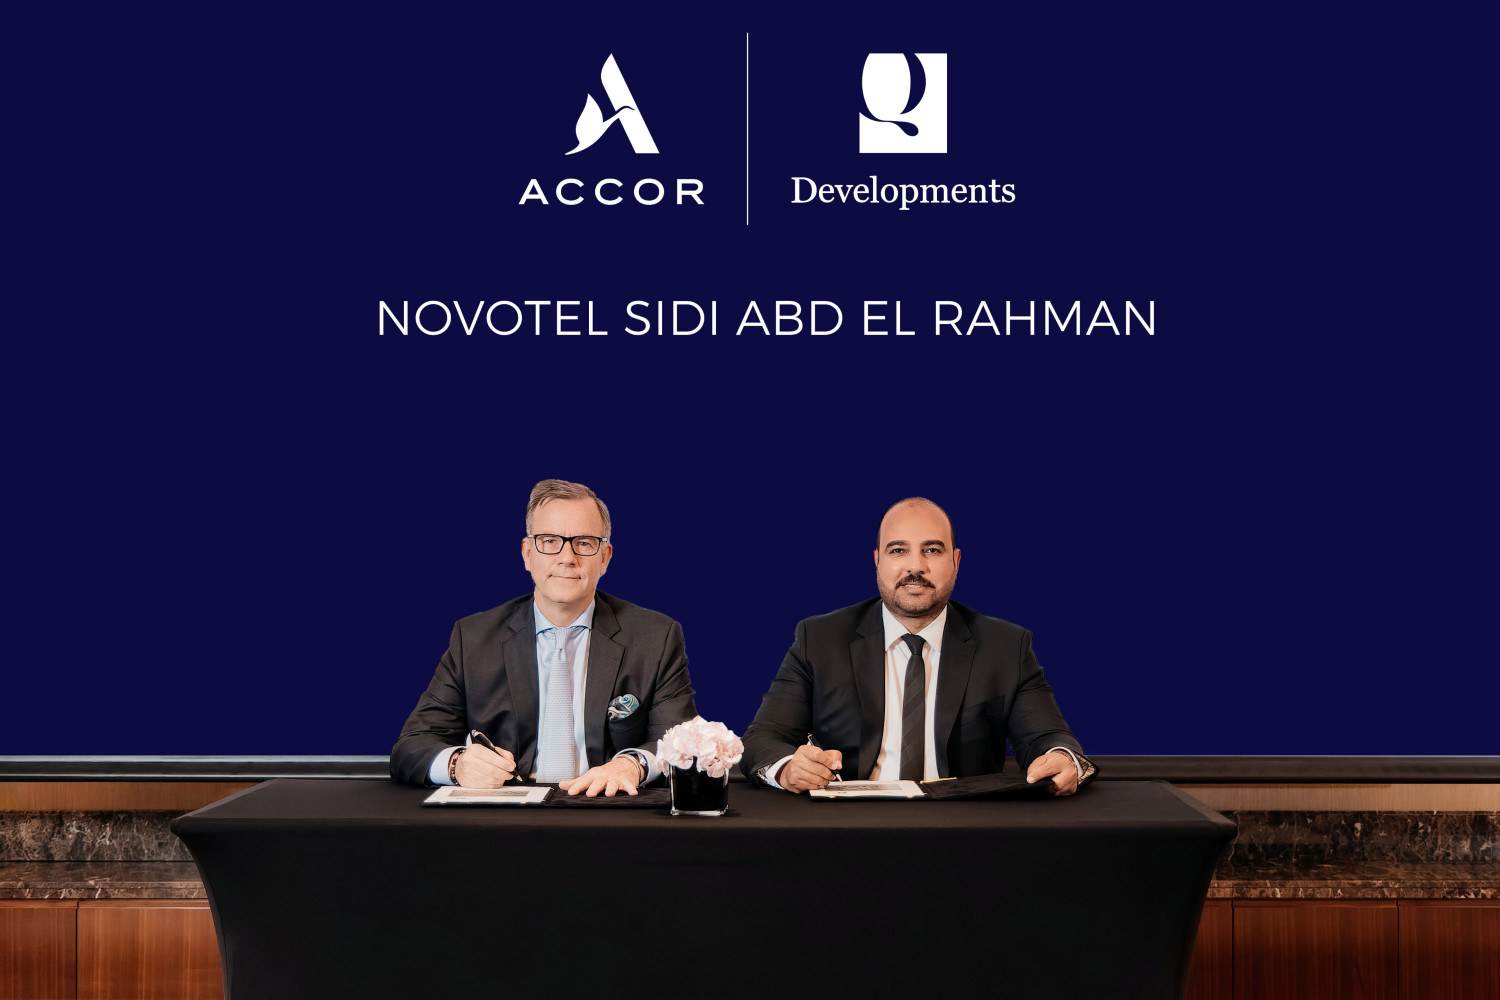 Novotel Sidi Abd El Rahman Signing